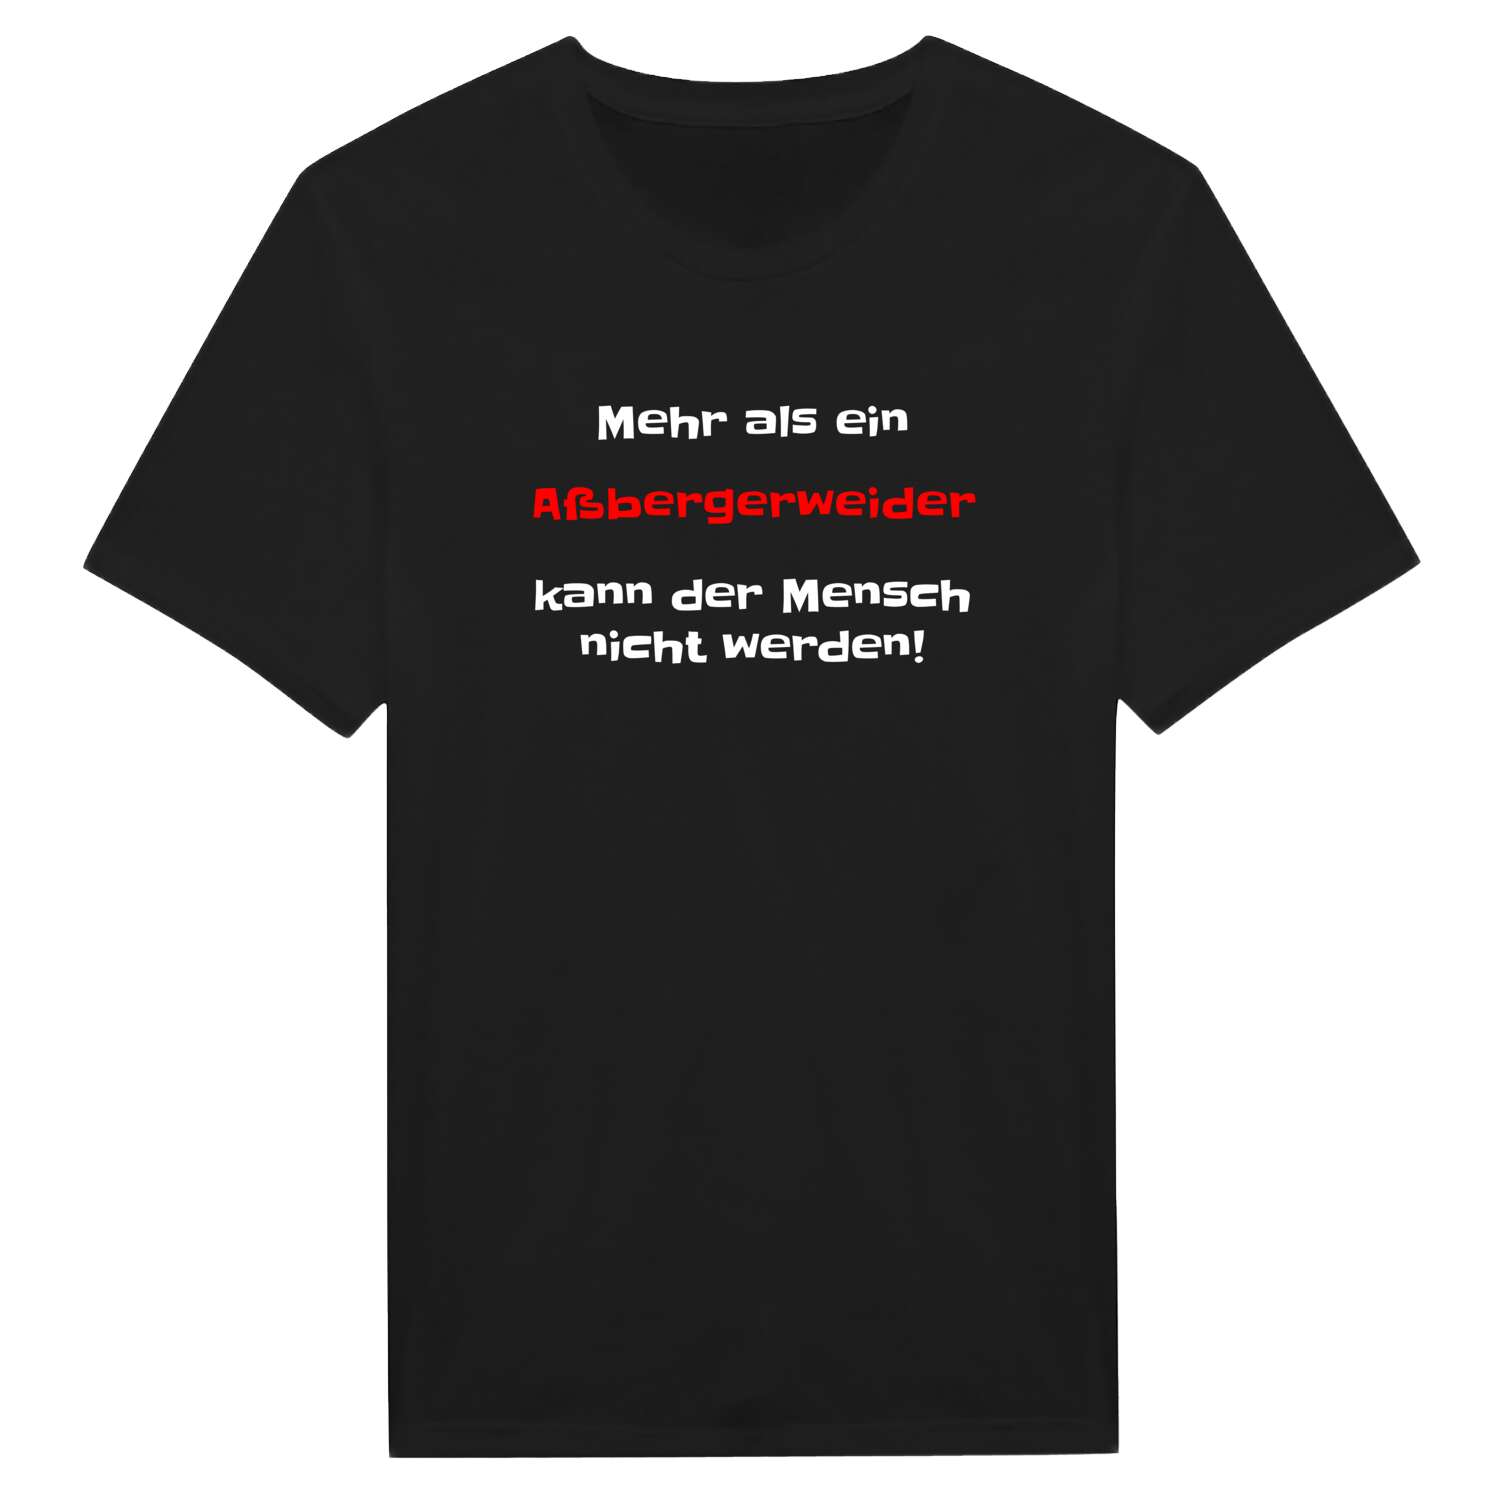 Aßbergerweid T-Shirt »Mehr als ein«